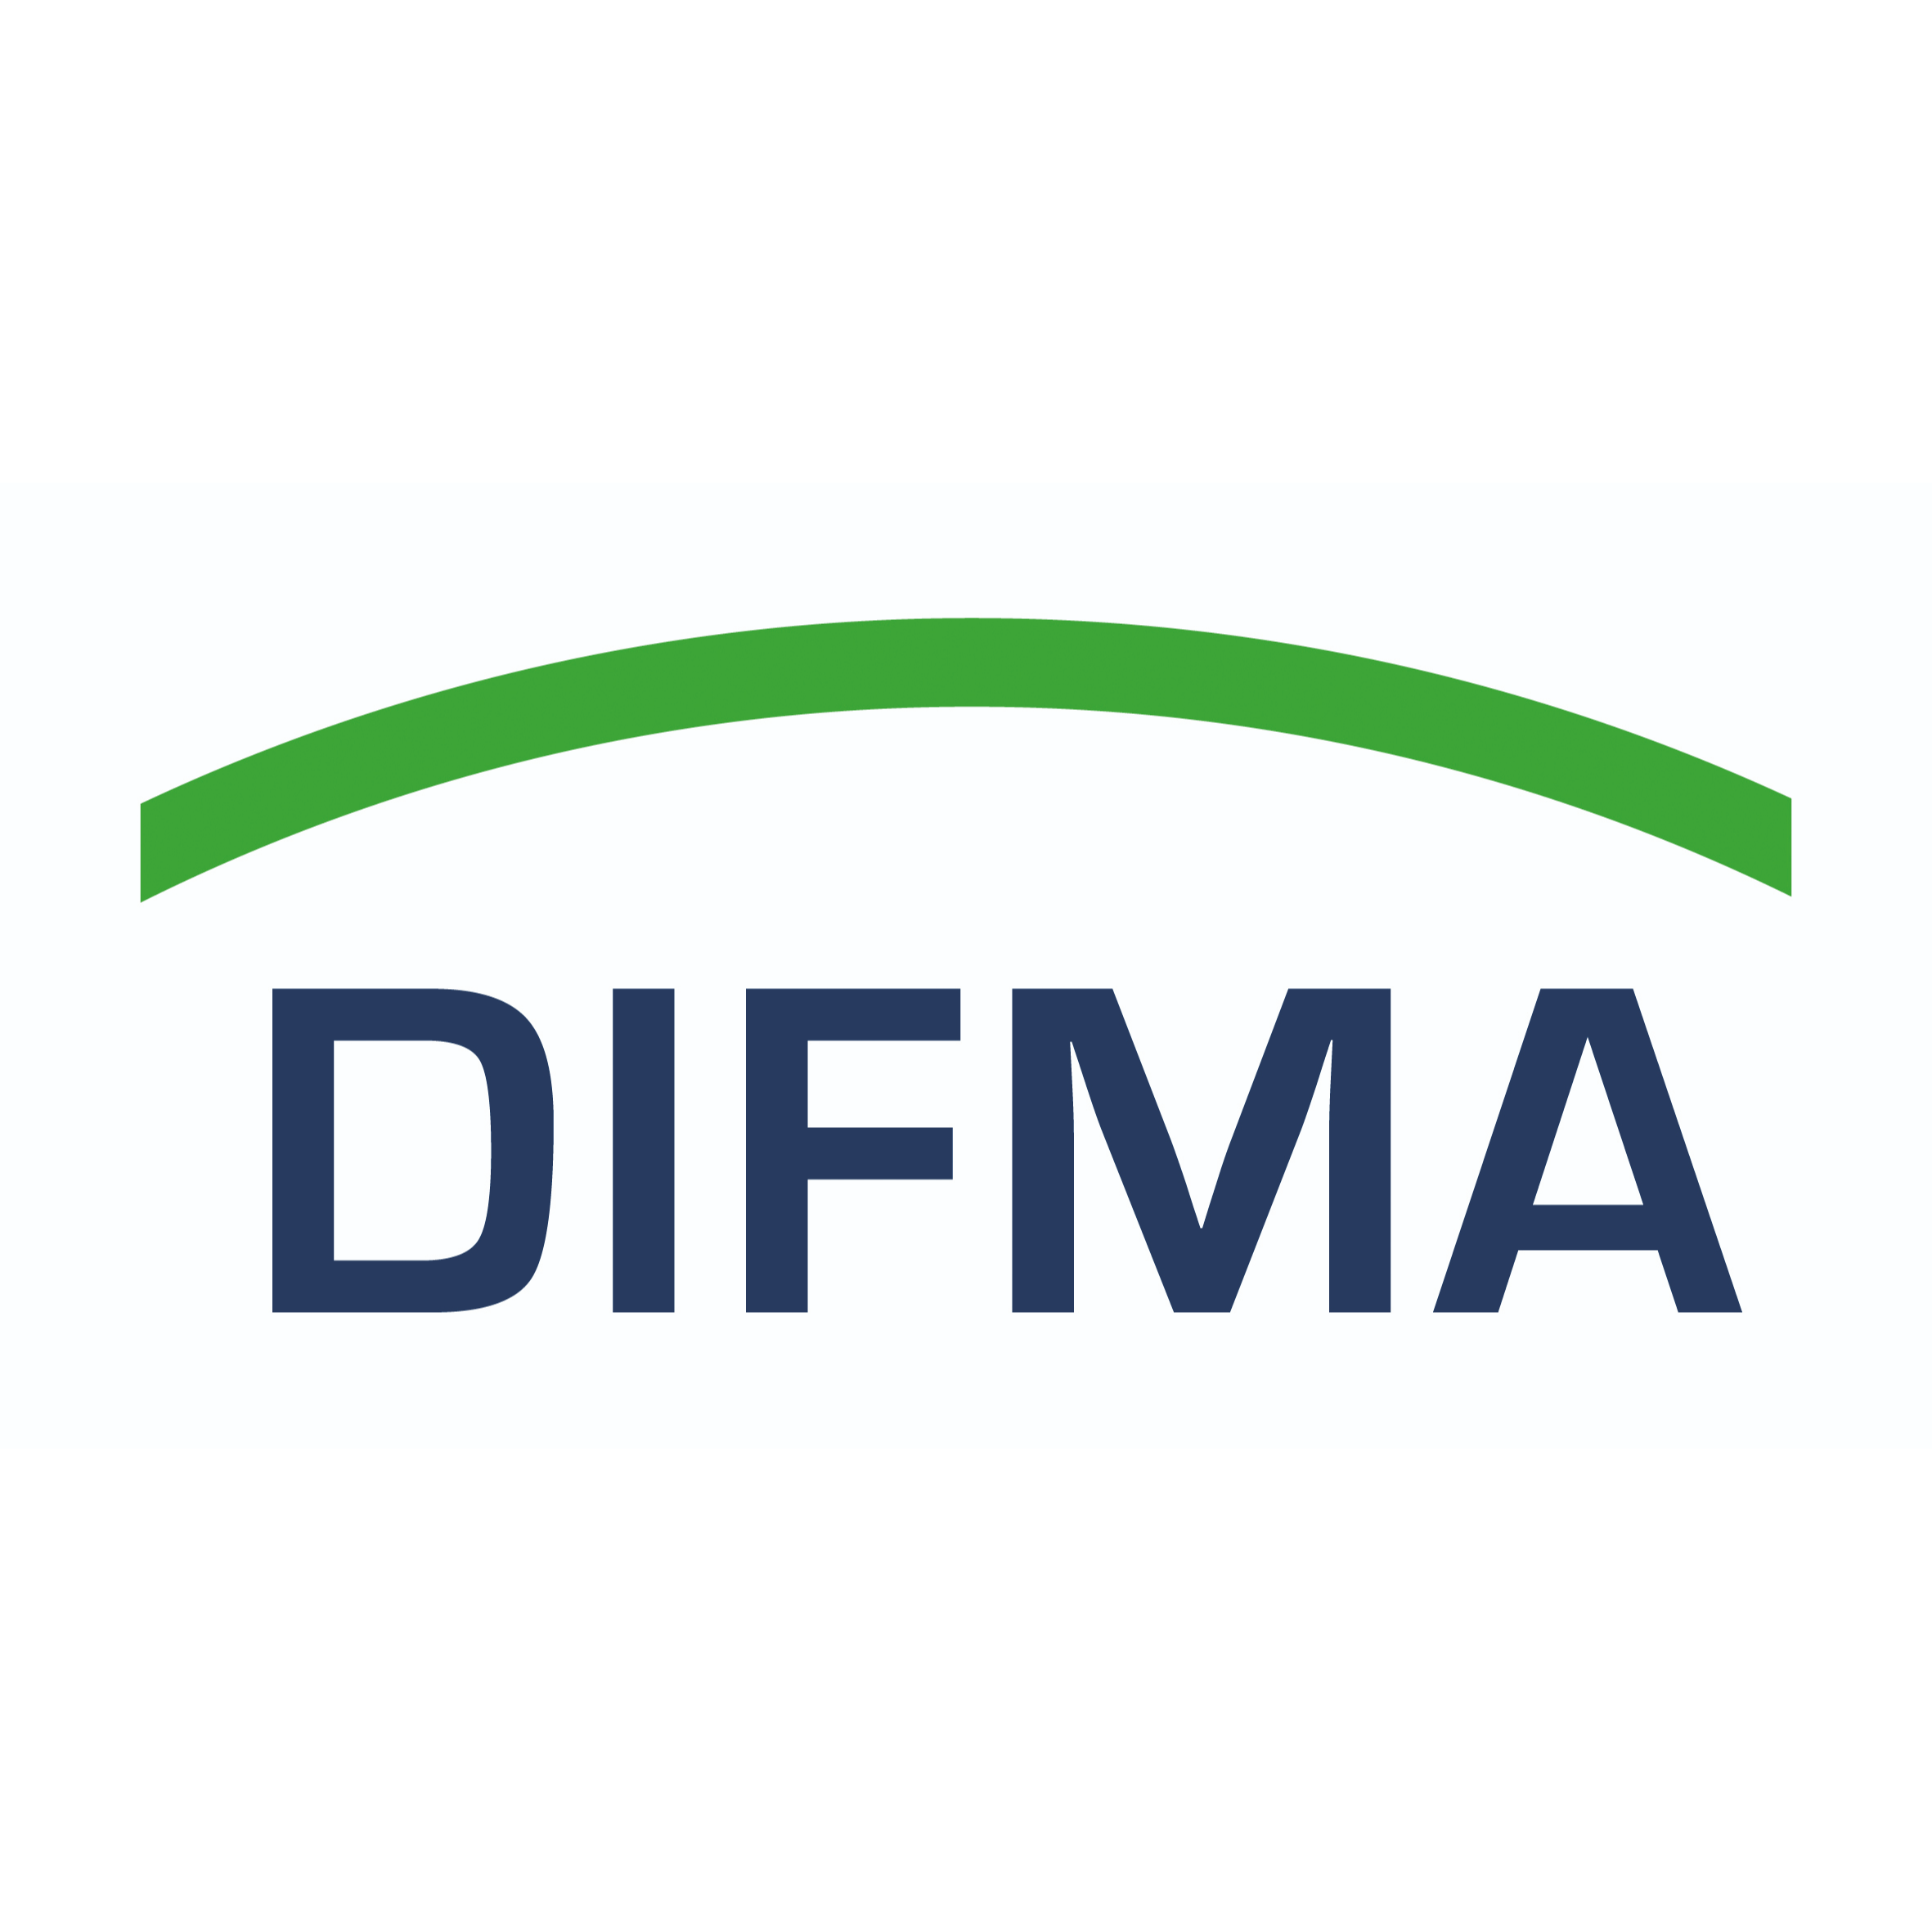 DIFMA Deutsches Institut für Facility Management GmbH  